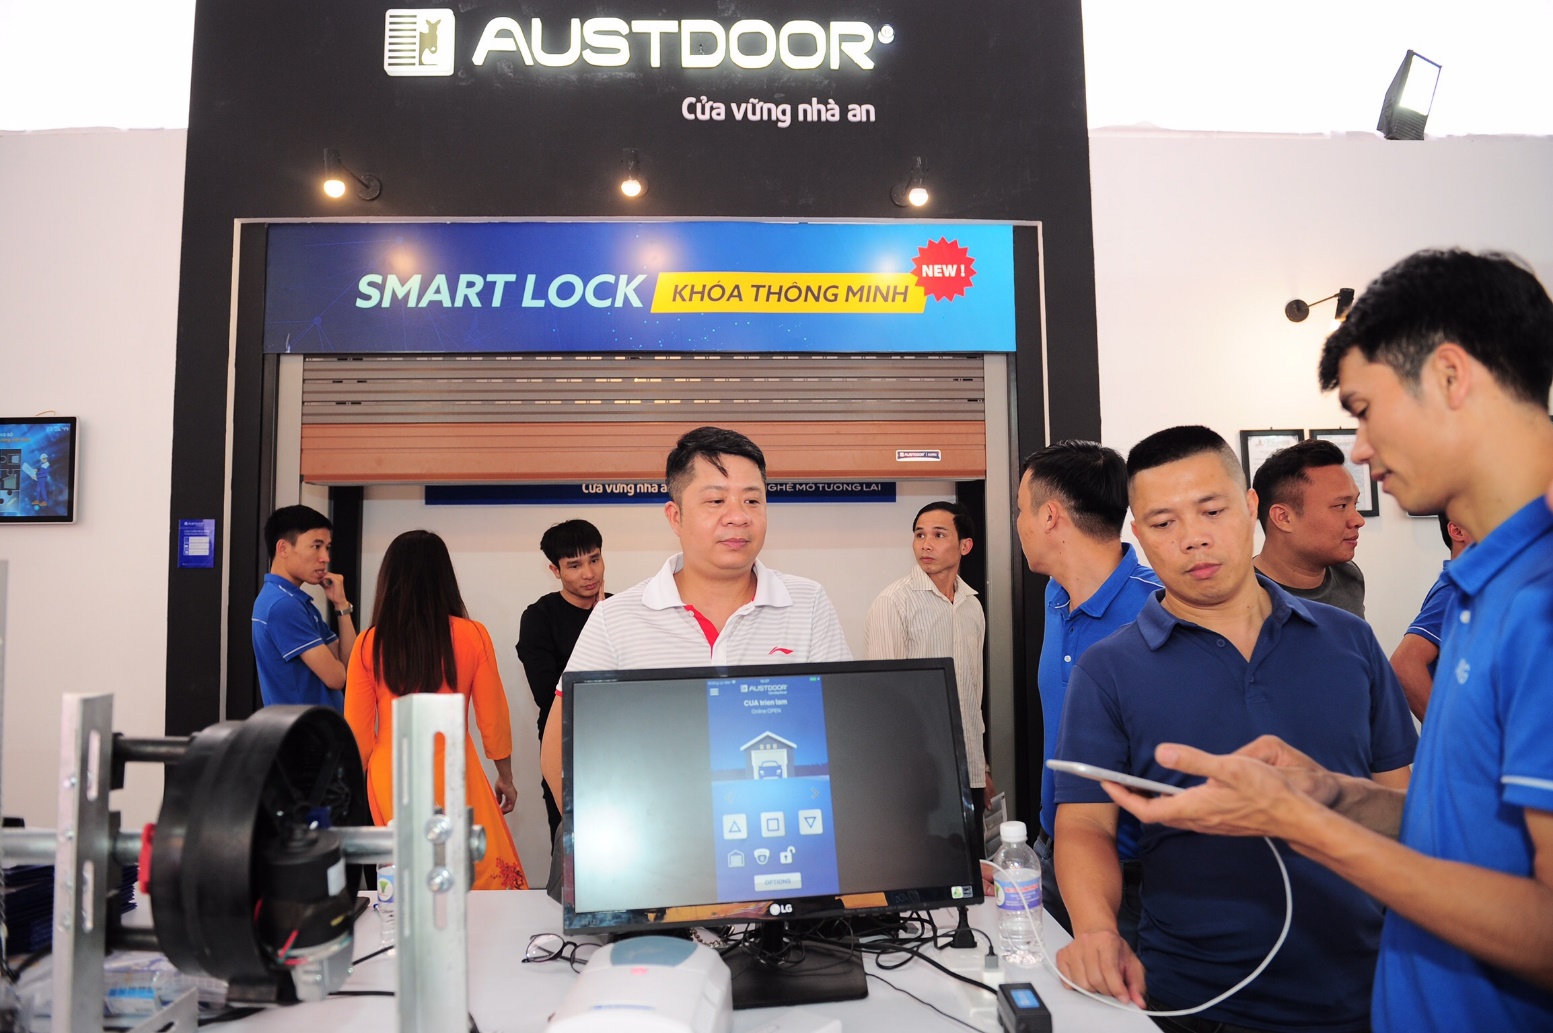 Khách hàng trực tiếp trải nghiệm Austfly - Ứng dụng tích hợp, điều khiển cửa qua smart-phone và Smart Lock - Khóa thông minh chống trộm mới lần đầu tiên trưng bày trên thị trường Việt Nam